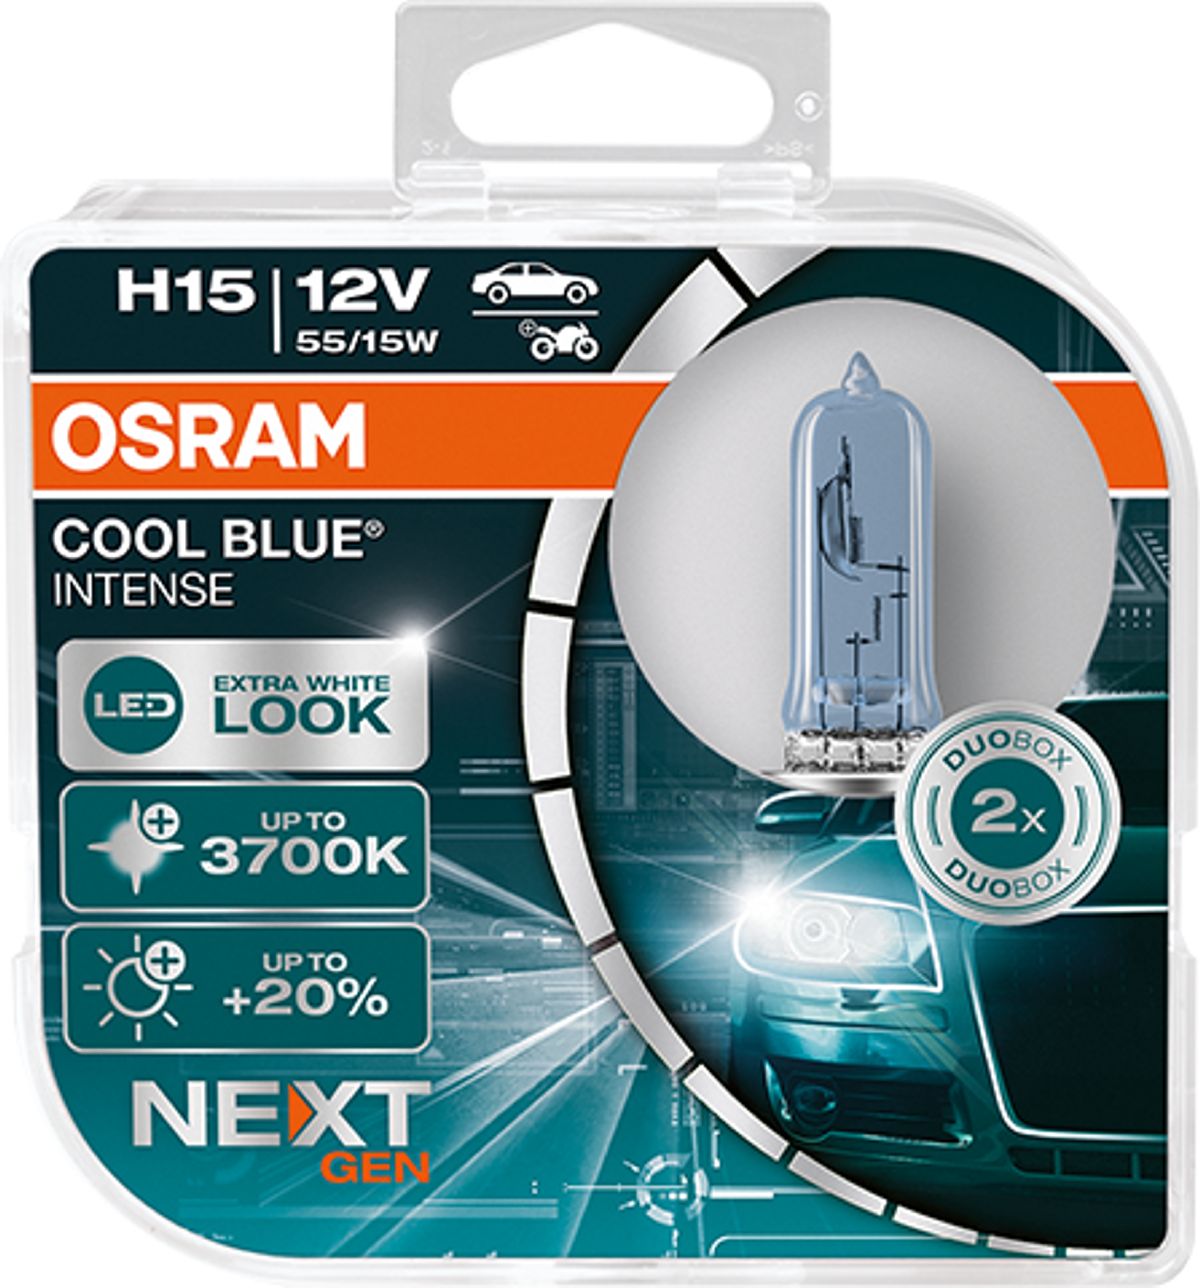 OSRAM Cool blue intense H15 Duobox